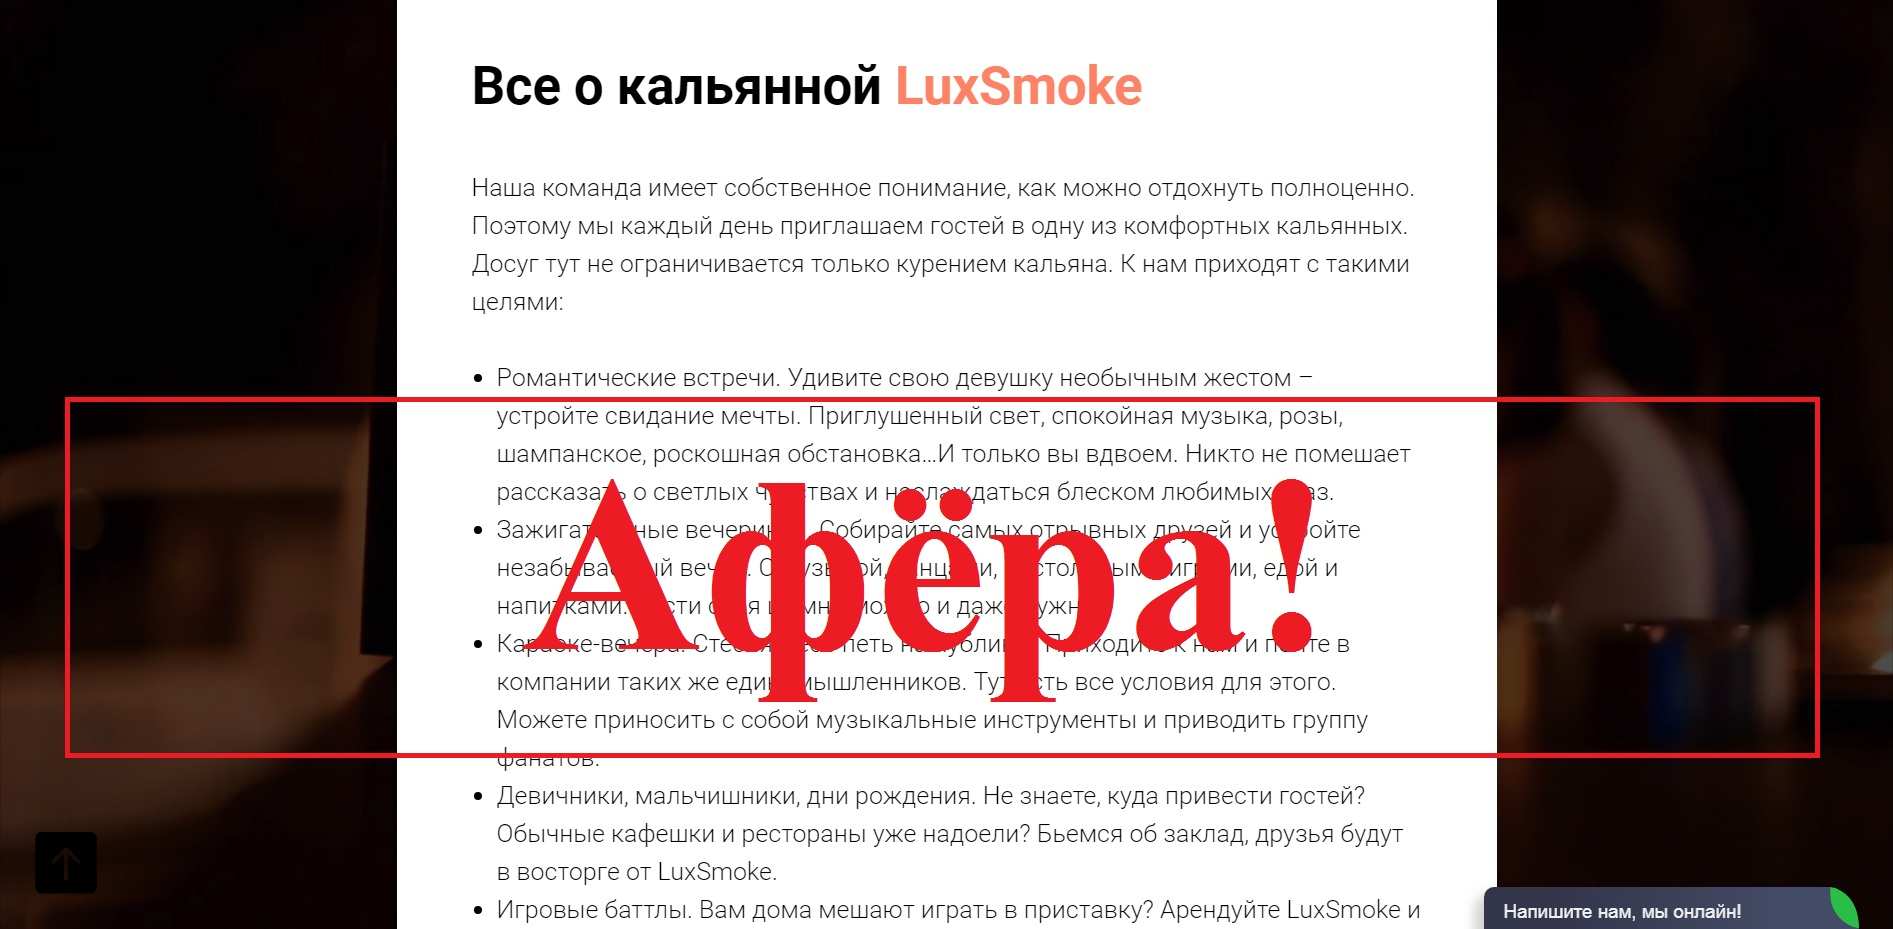 LuxSmoke – отзывы о фальшивой кальянной luxsmoke.ru